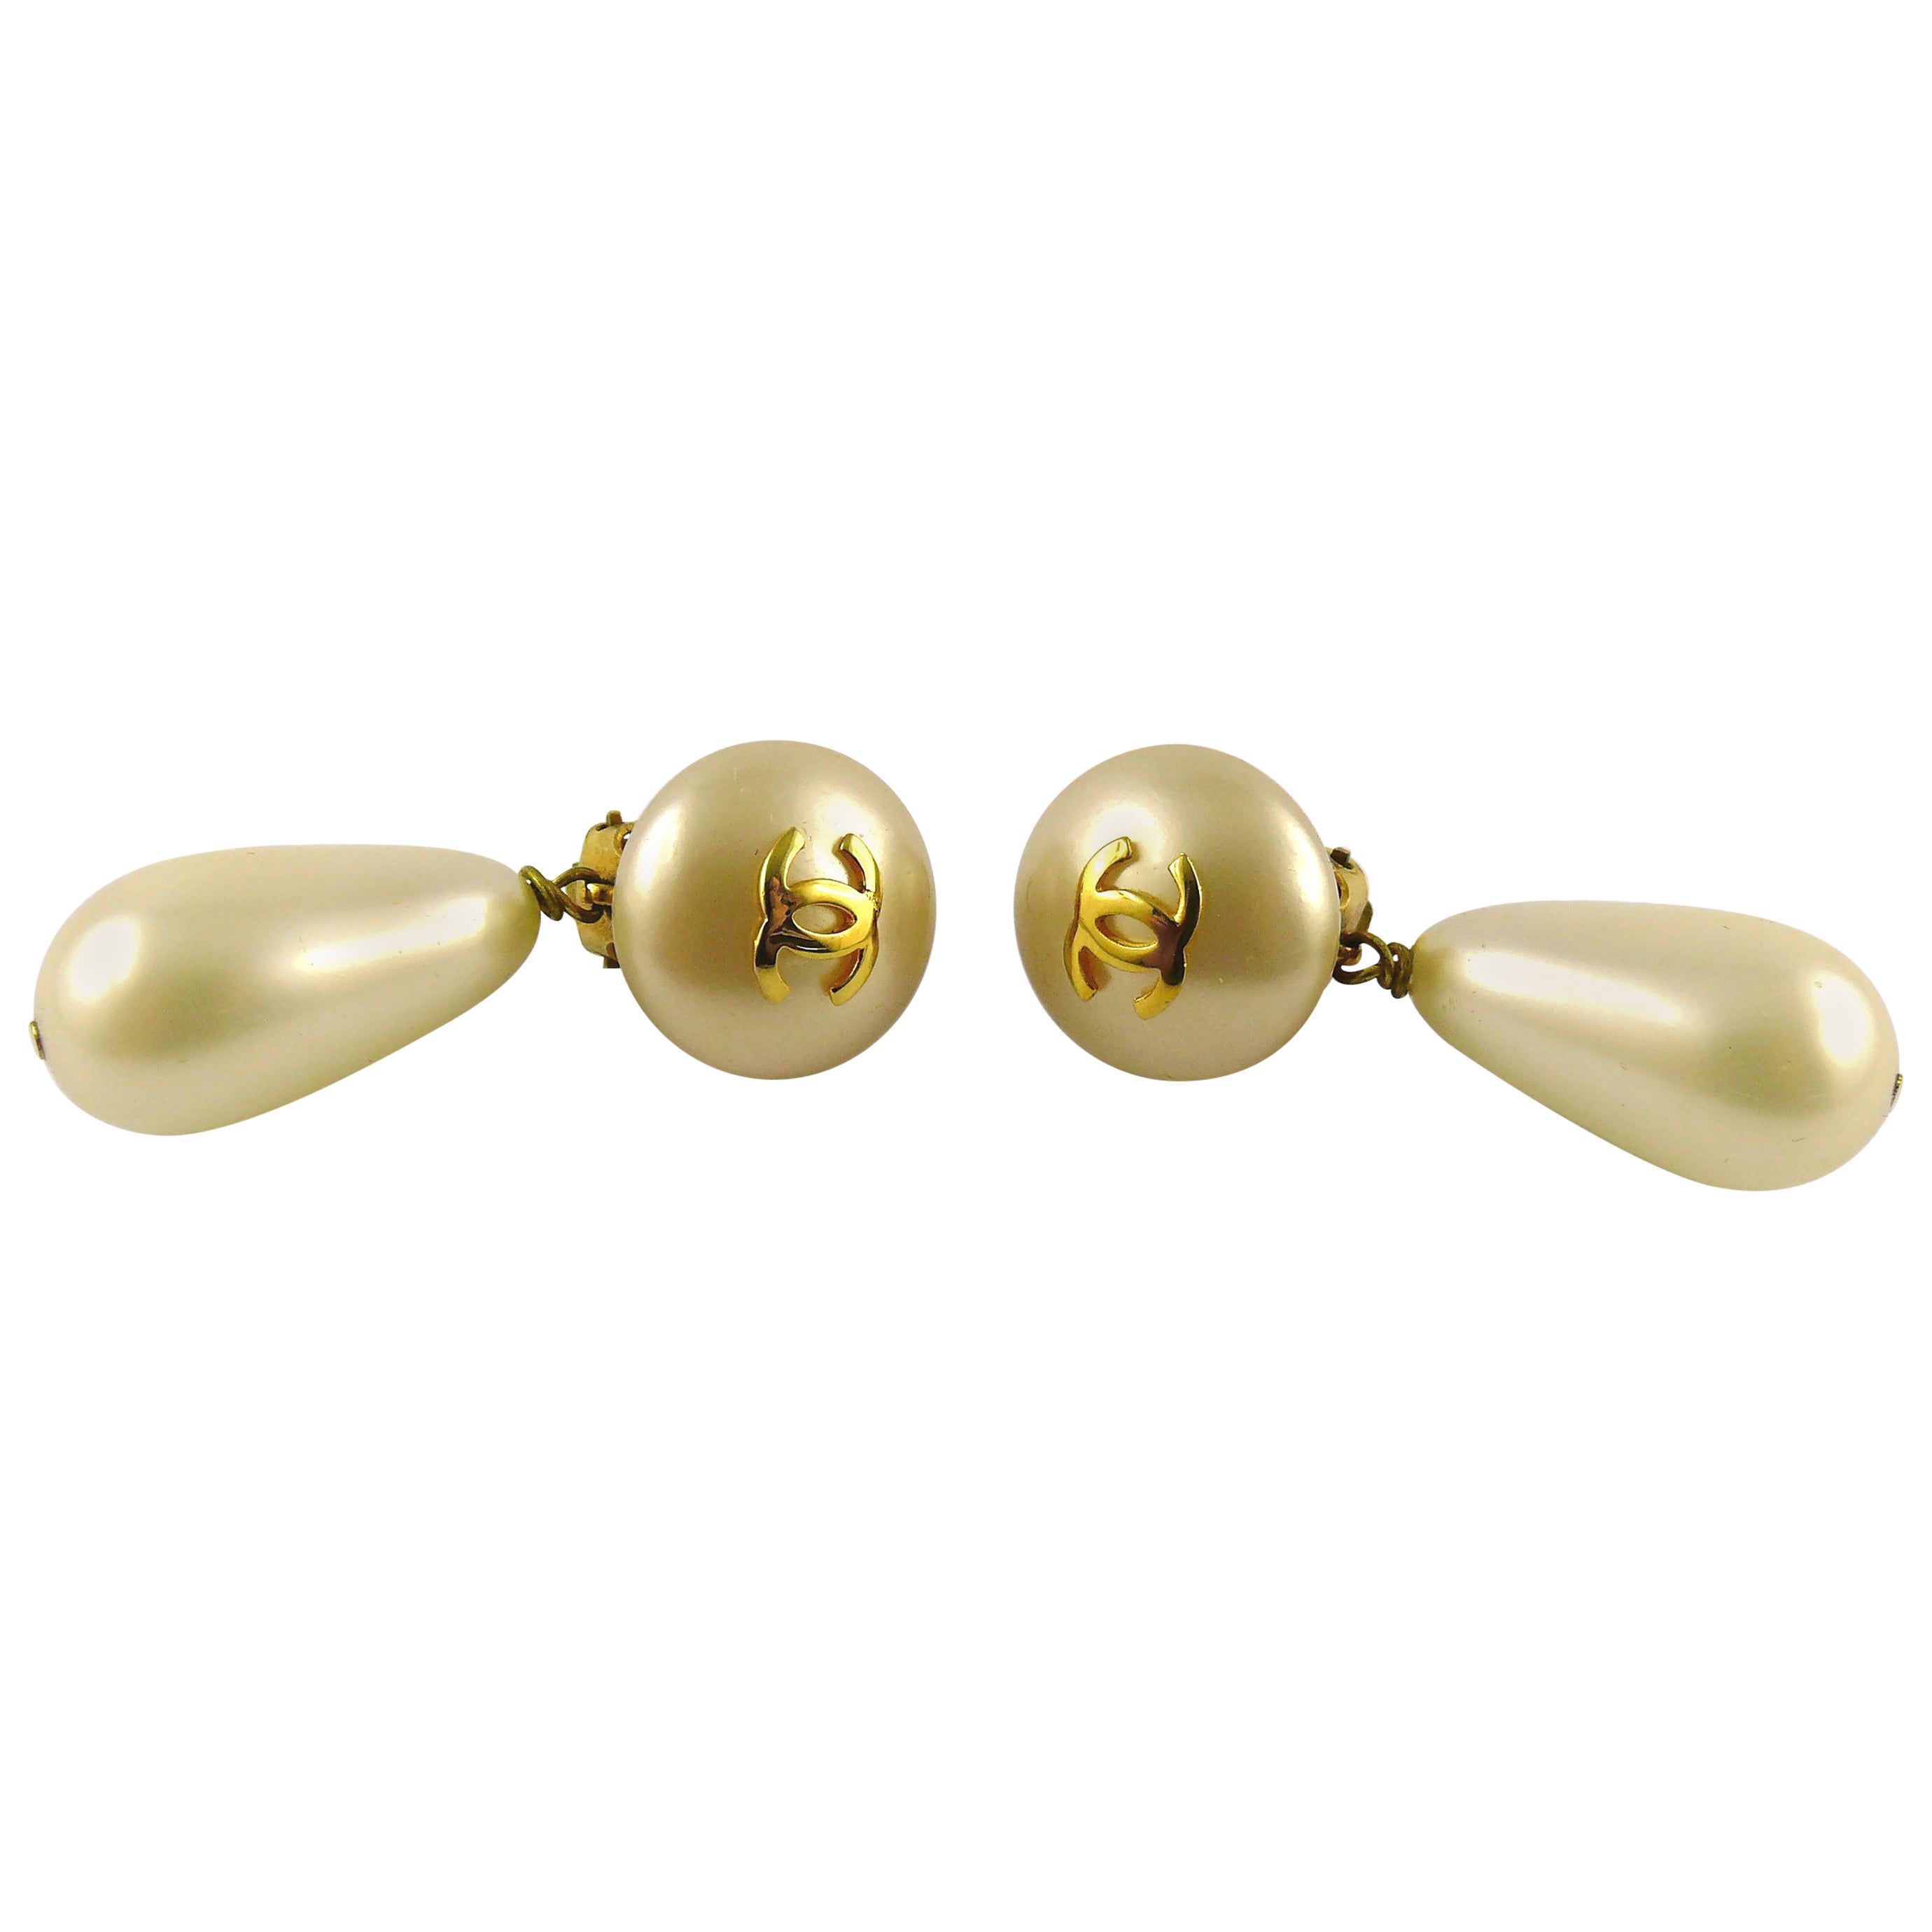 OPEN FOR VINTAGE on Twitter In the jewellery spotlight Vintage Chanel  pearl swing earrings httpstco0iiPYzhqg0 chanel vintagejewellery  httpstcoshAuTIcdsd  Twitter